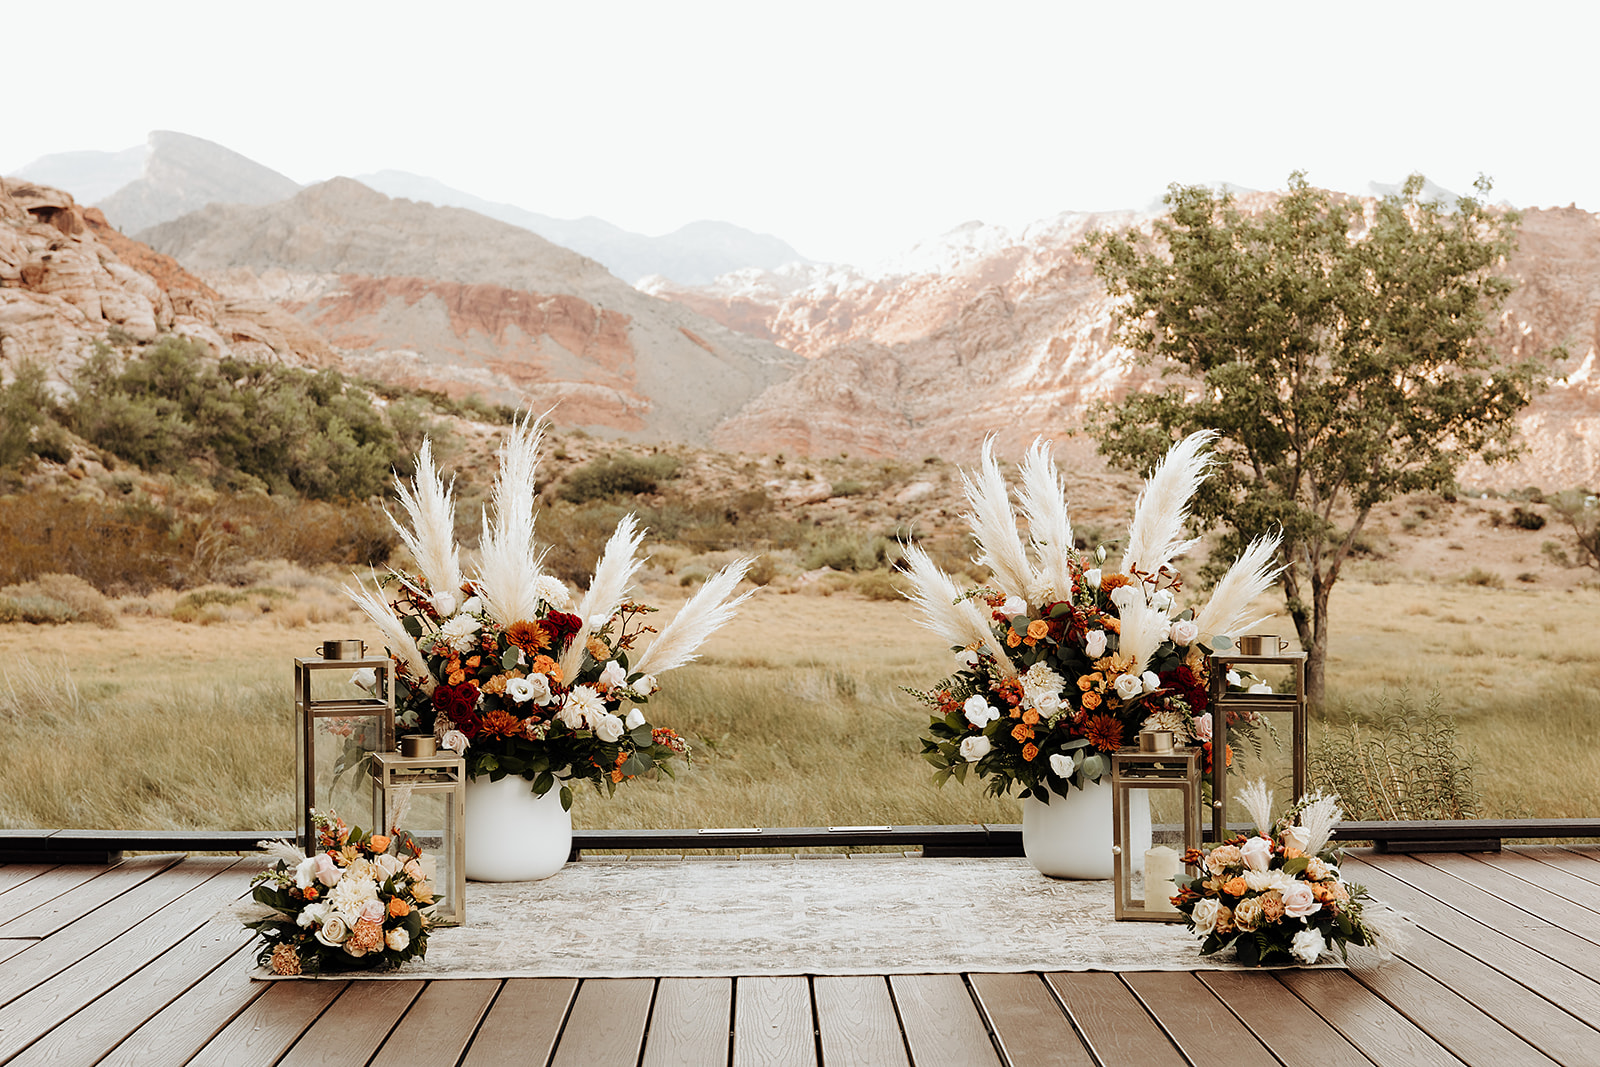 Ceremony setup with floral arrangements by Elopement Las Vegas